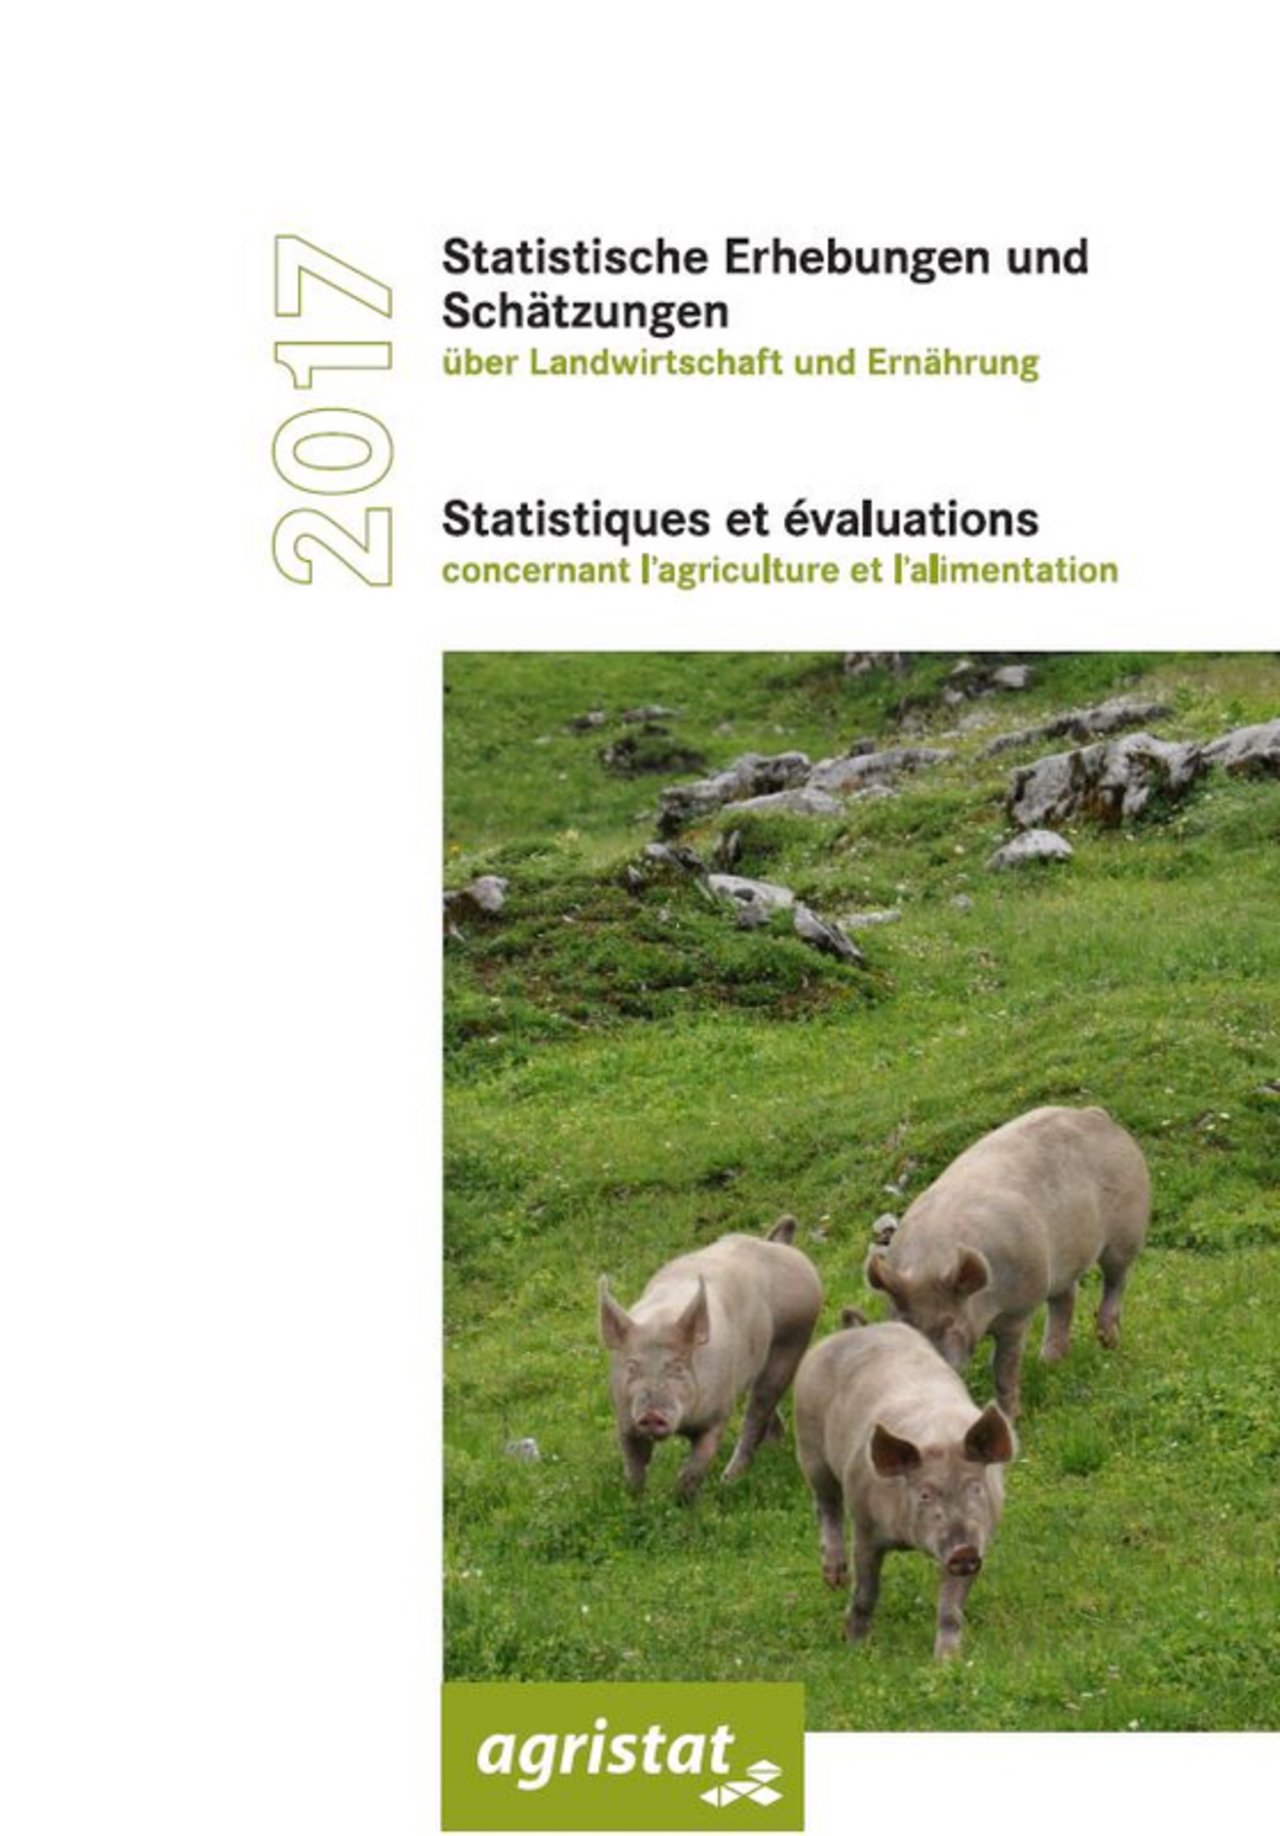 Das neue Statistik-Buch. (Bild SBV)